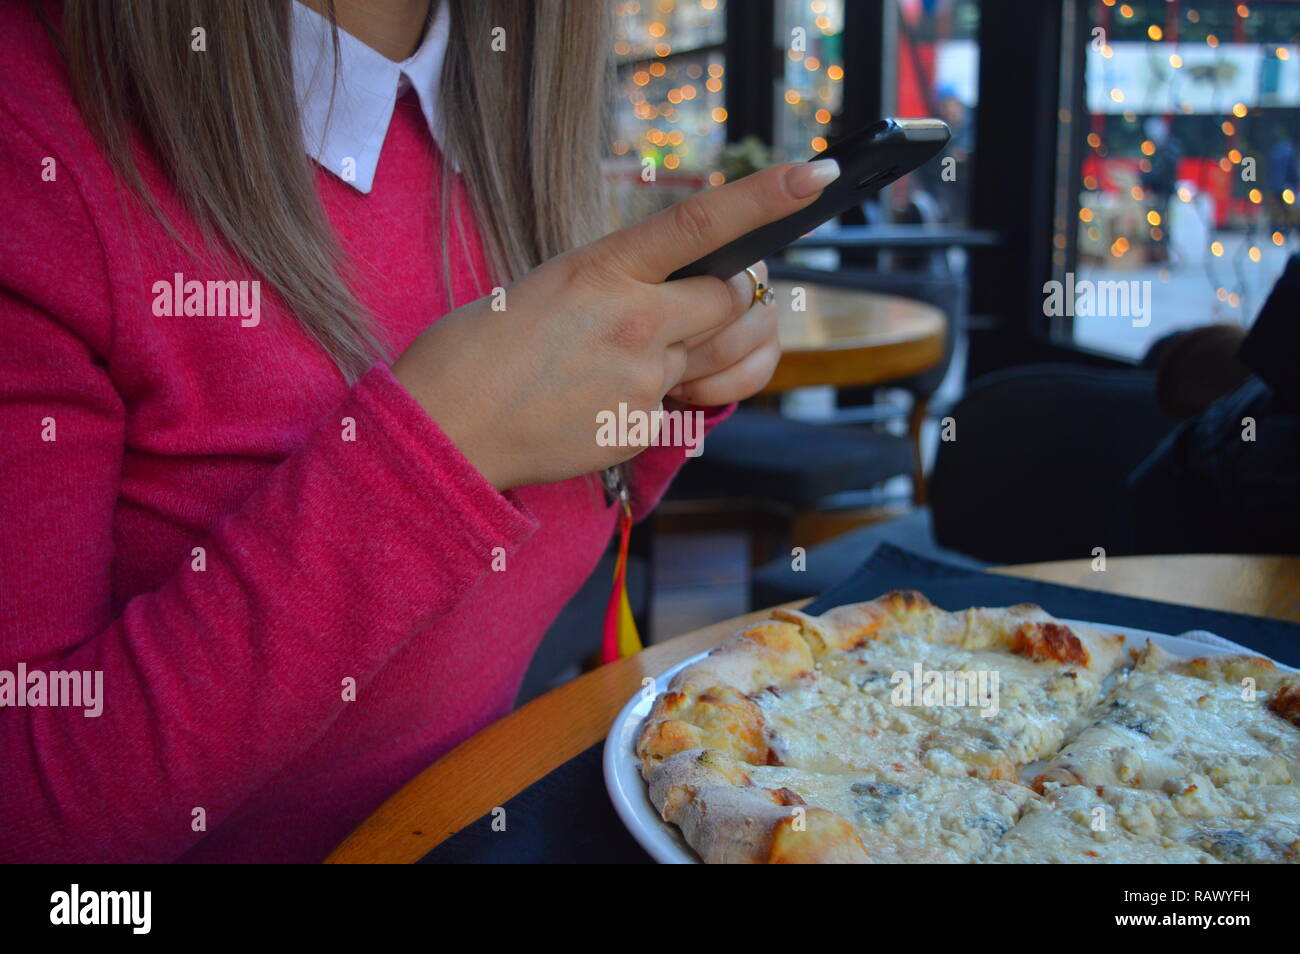 Photographier sa fille dans un restaurant Pizza Banque D'Images